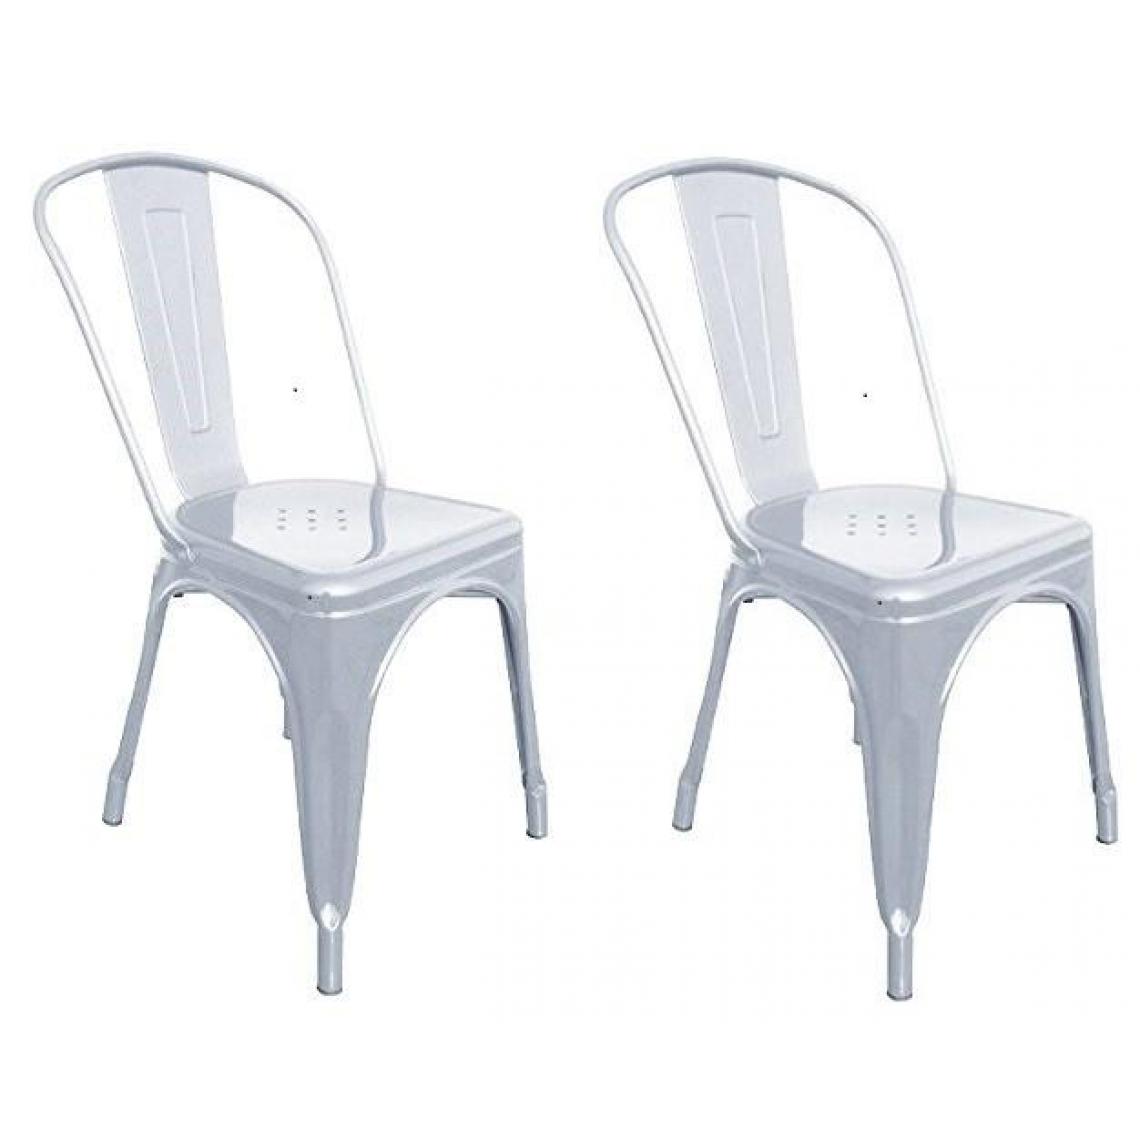 Decoshop26 - Lot de 2 chaises de salle à manger style industriel factory métal gris CDS09002 - Chaises